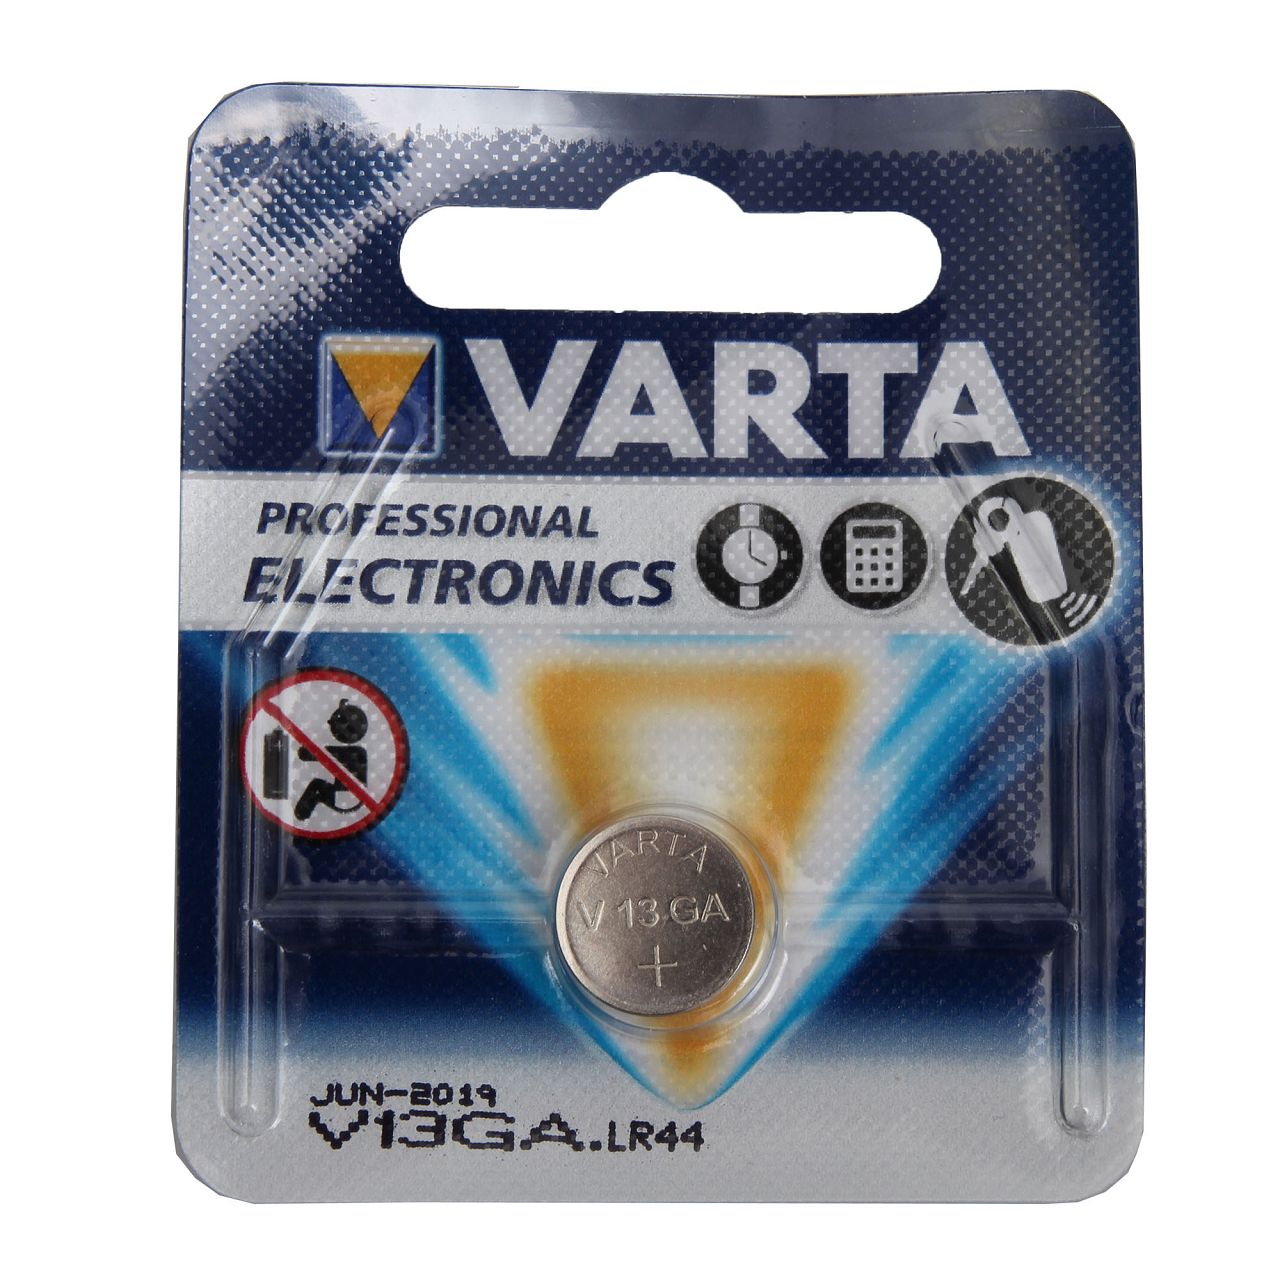 10x VARTA Knopfzelle Knopfbatterie Batterie 1,5V VG13GA LR44